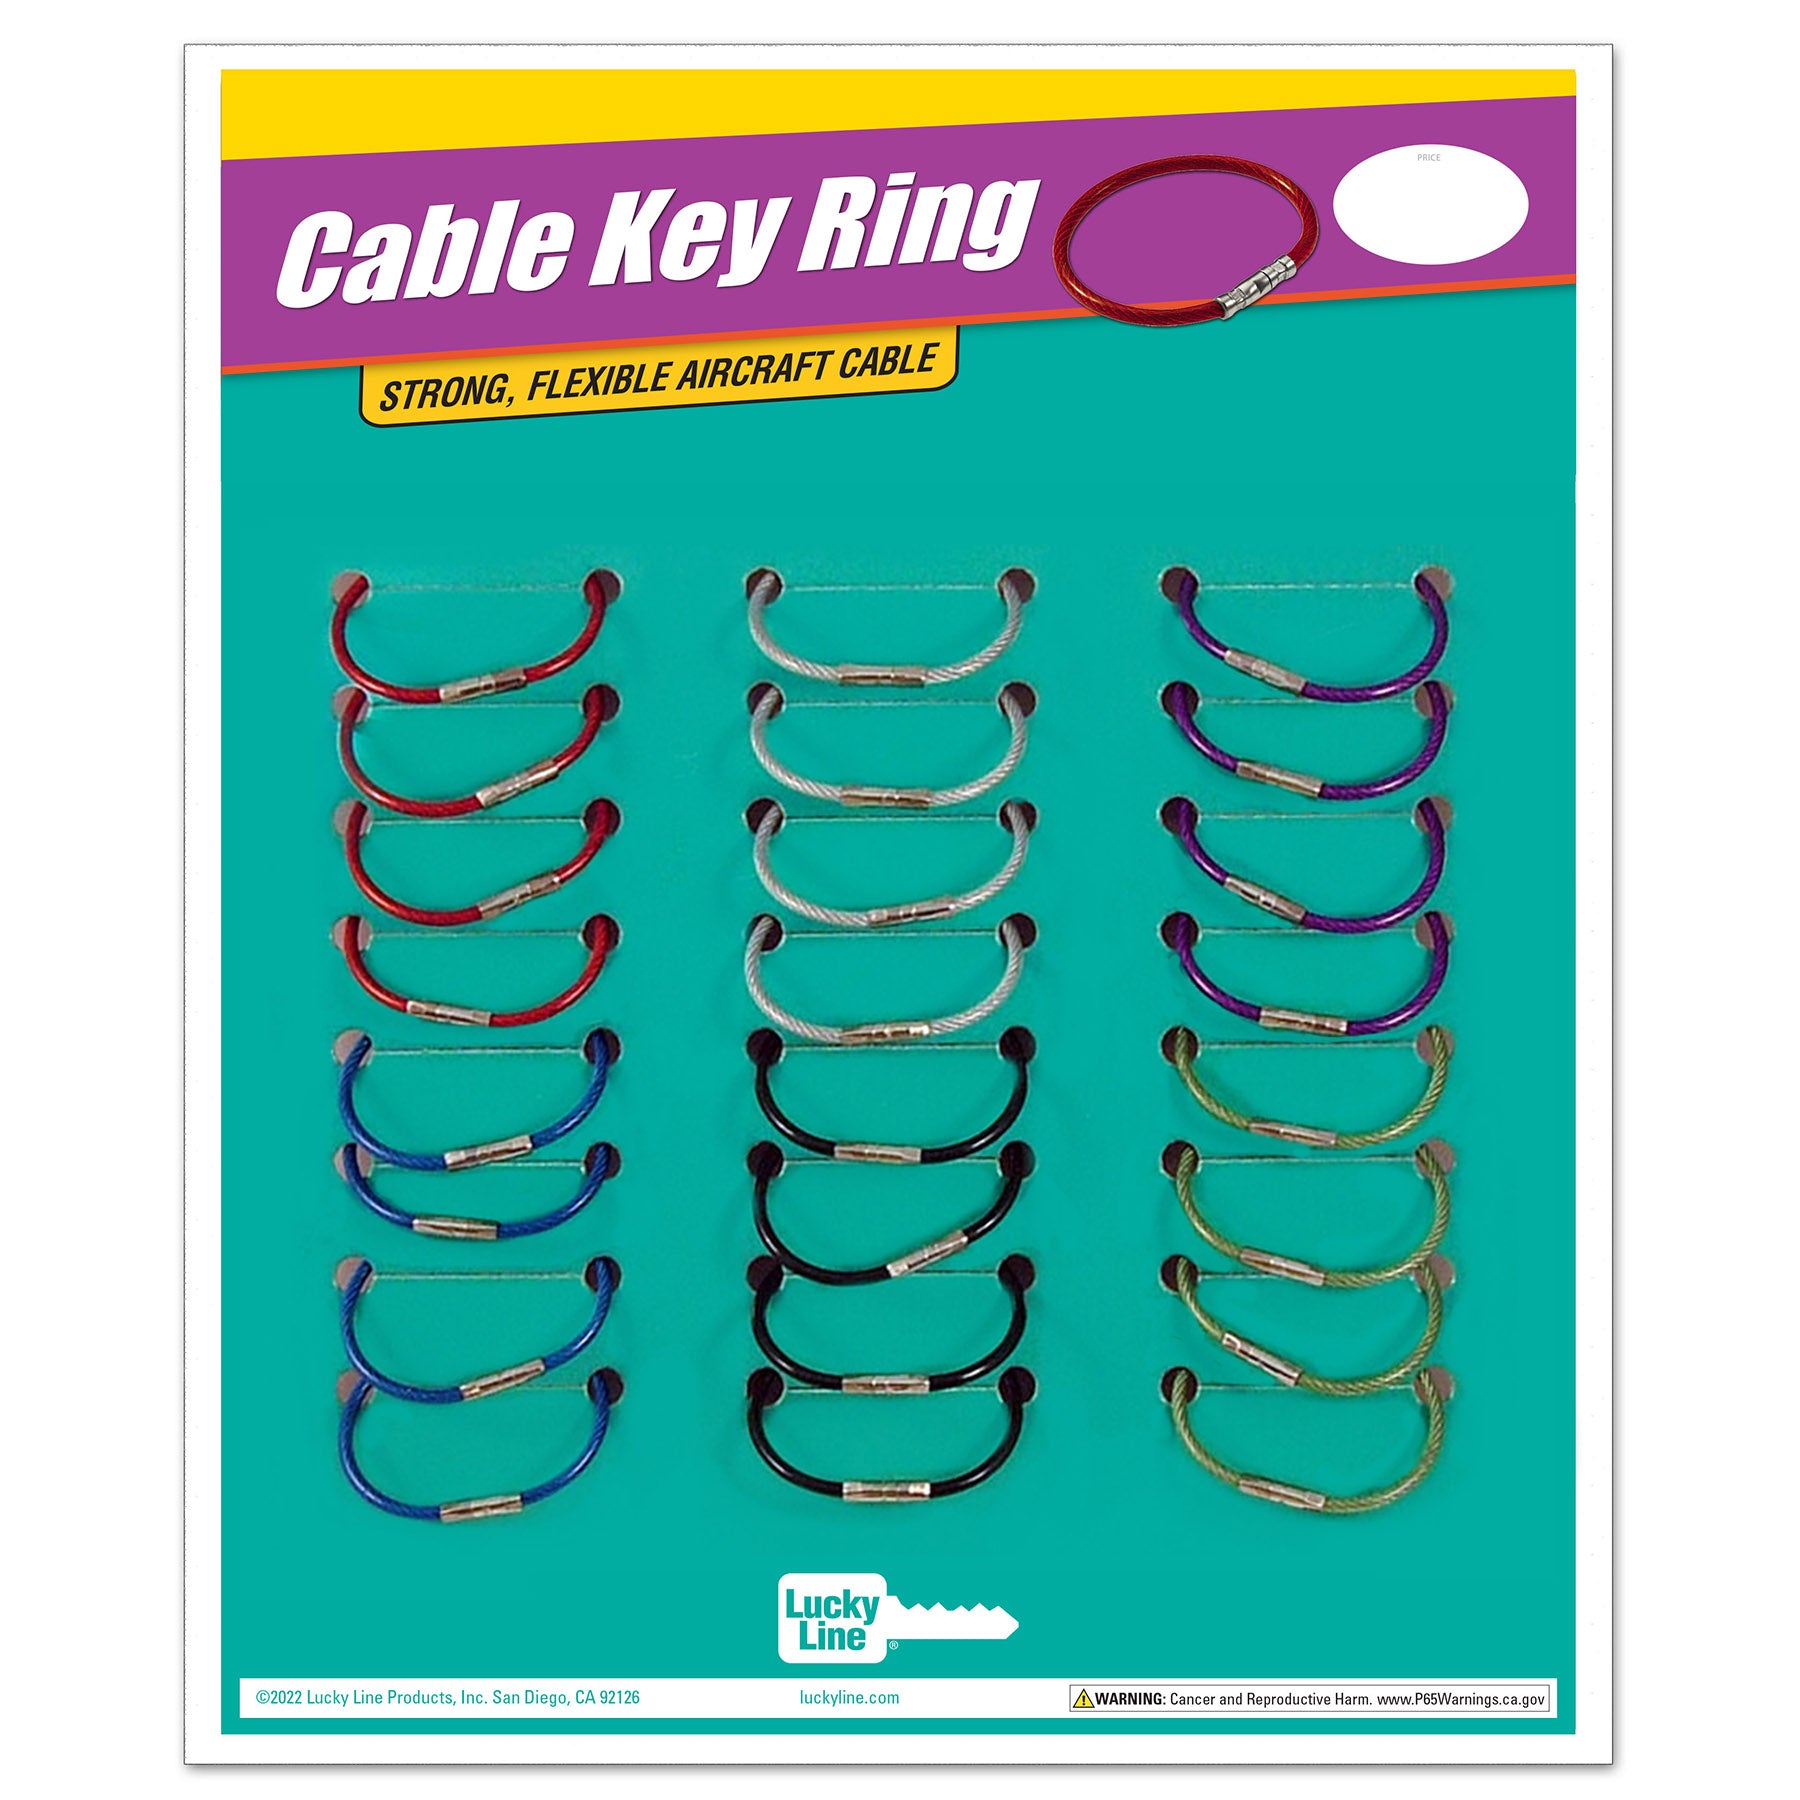 Crimp Close Locking Aircraft Cable Key Rings